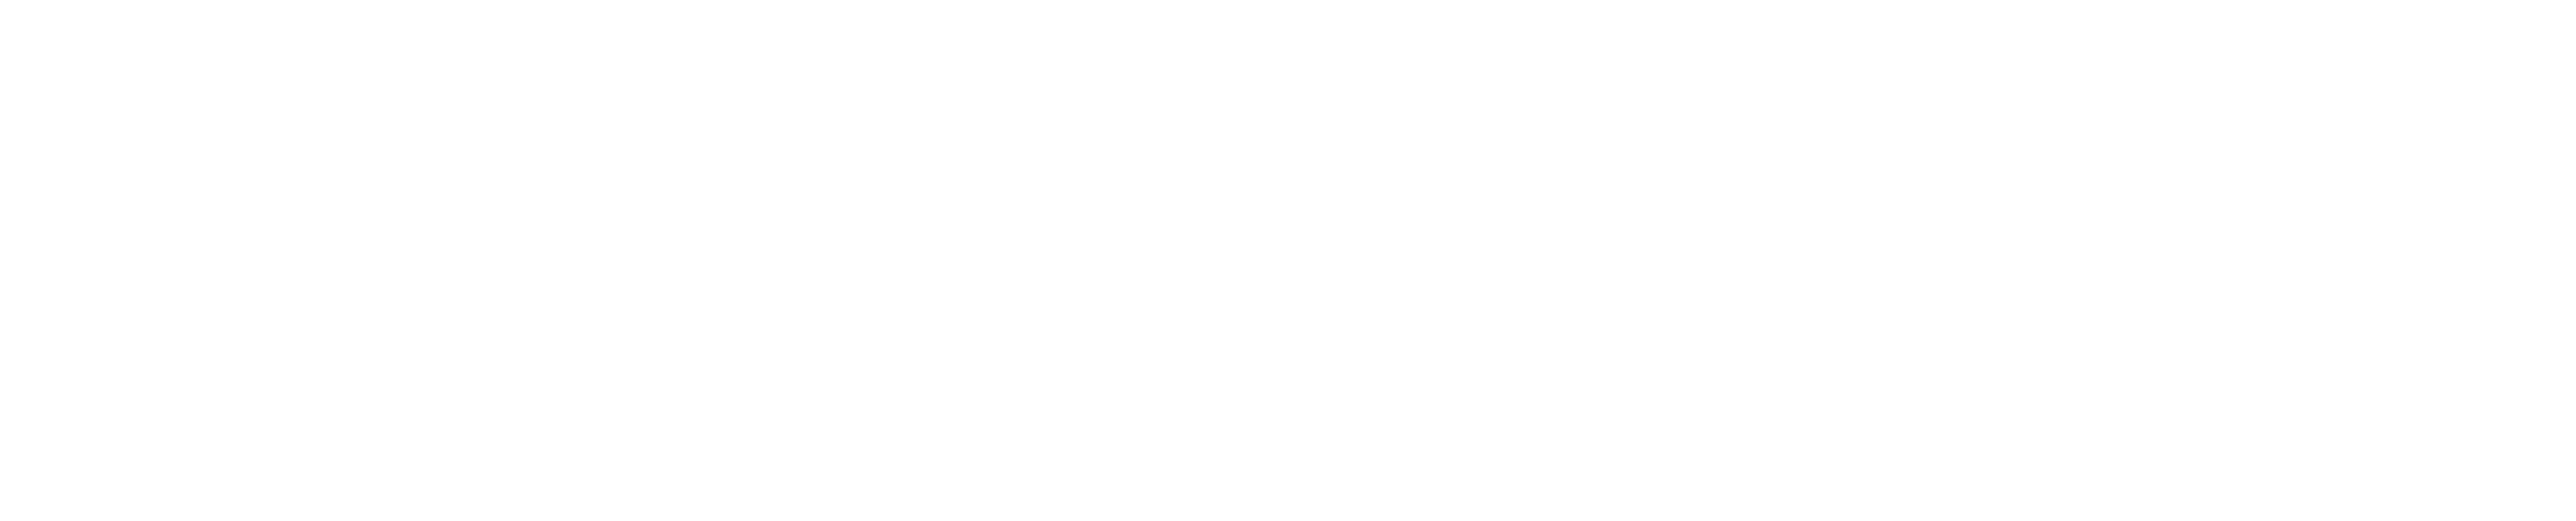 DaddysPocket Logo